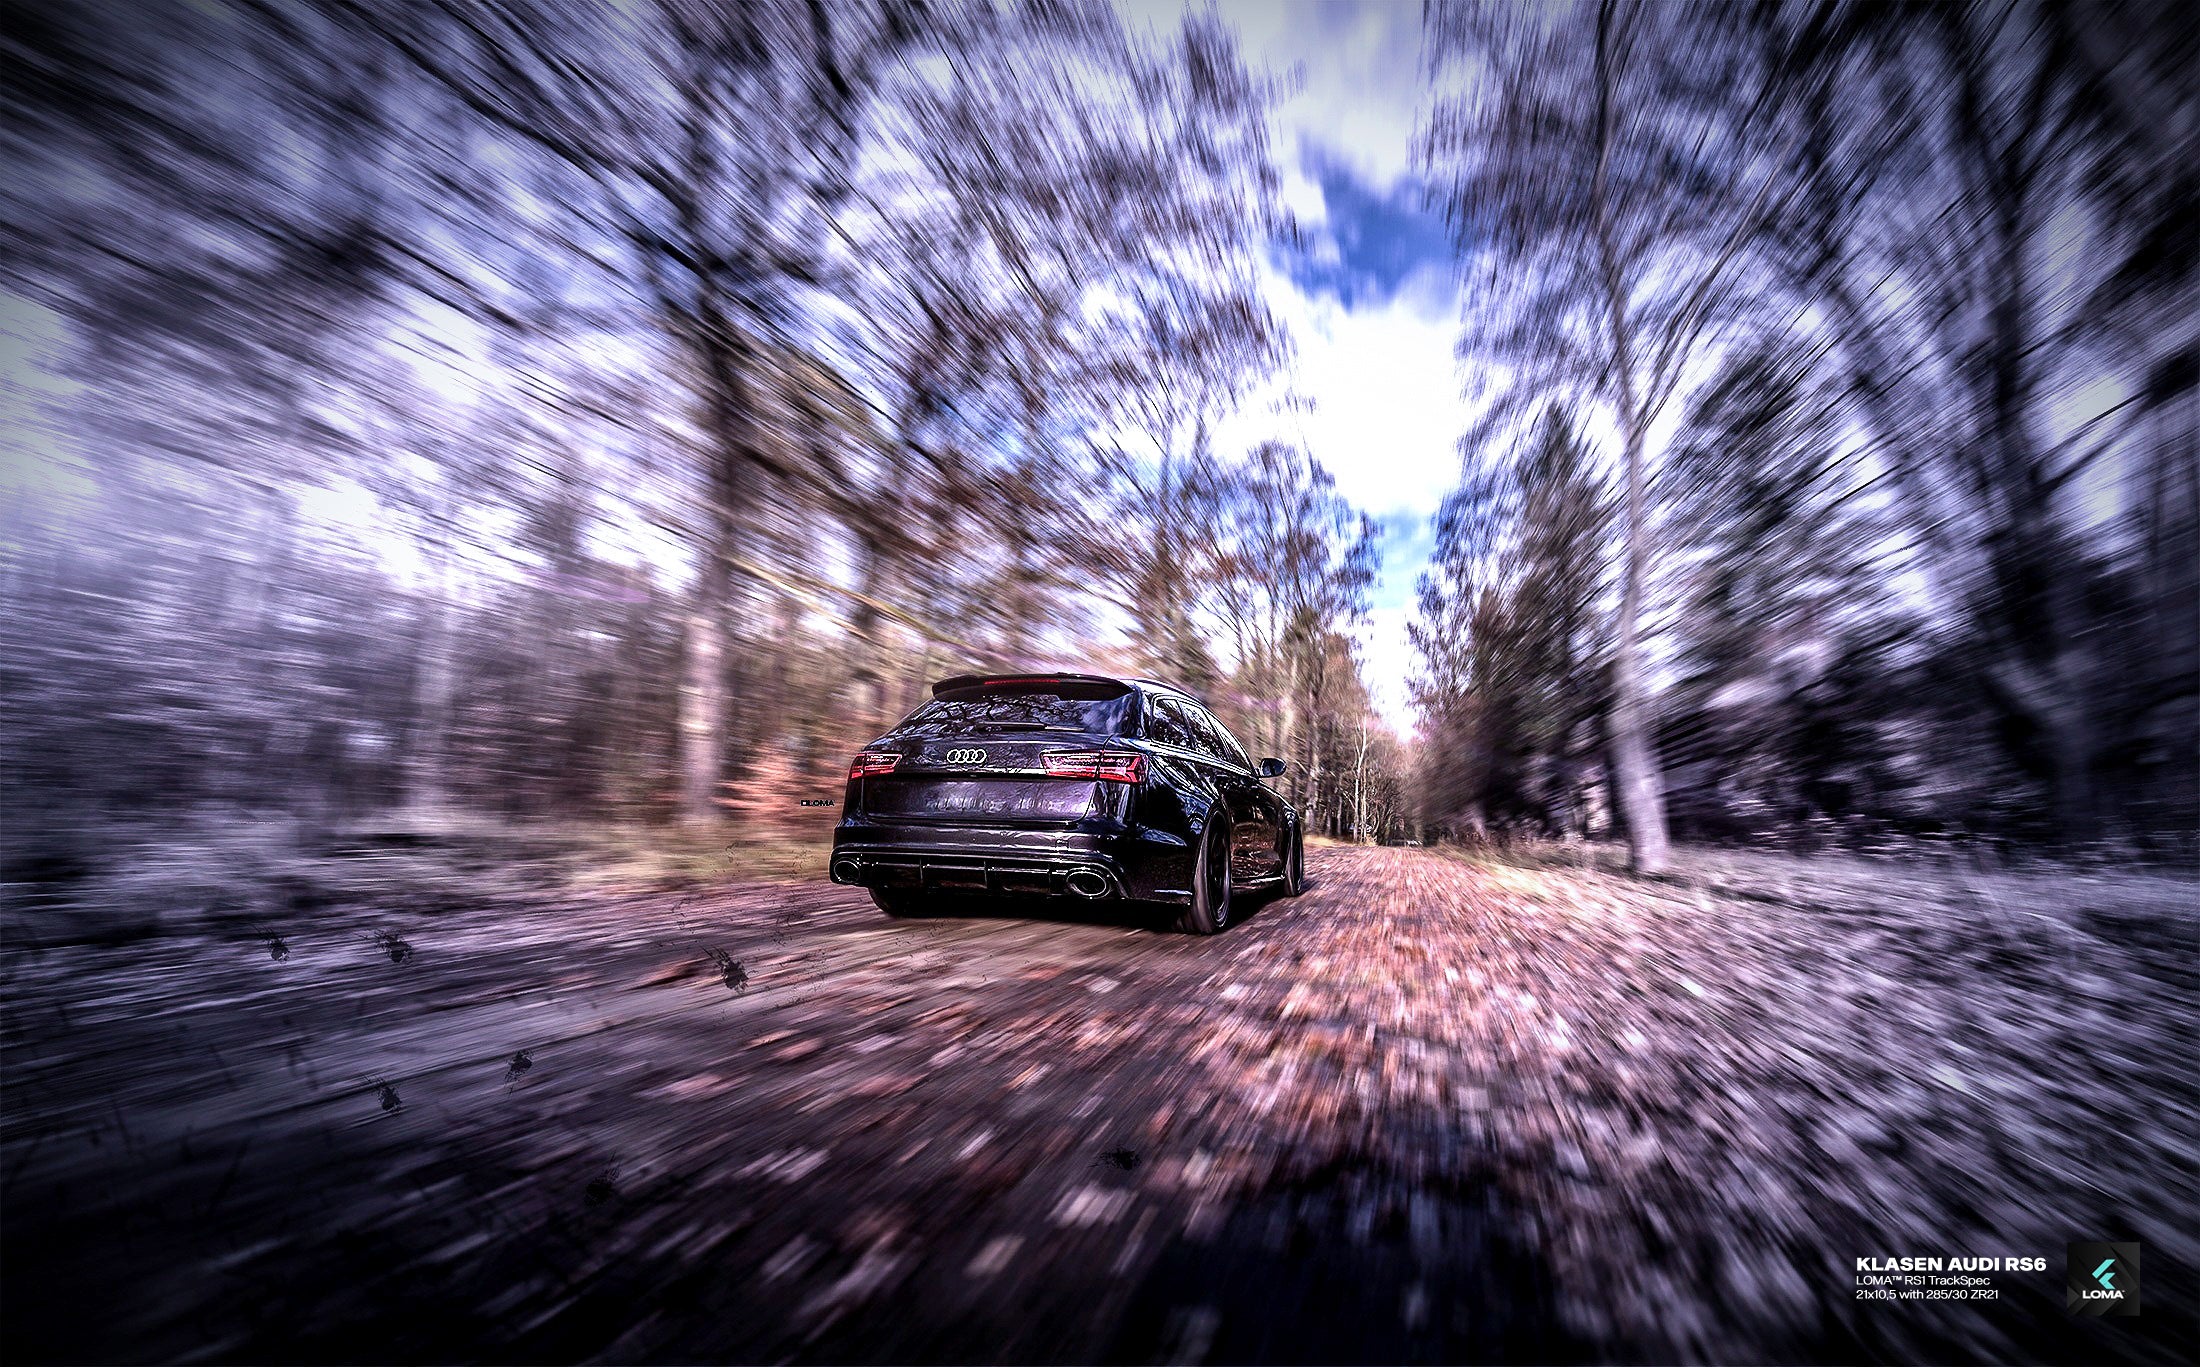 Klasen-Audi-RS6-with-LOMA-RS1-TrackSpec-Custom-Forged-Alloy-Wheels-6_55b12396-ec1c-4a6b-83b4-b06c0b11ddd4